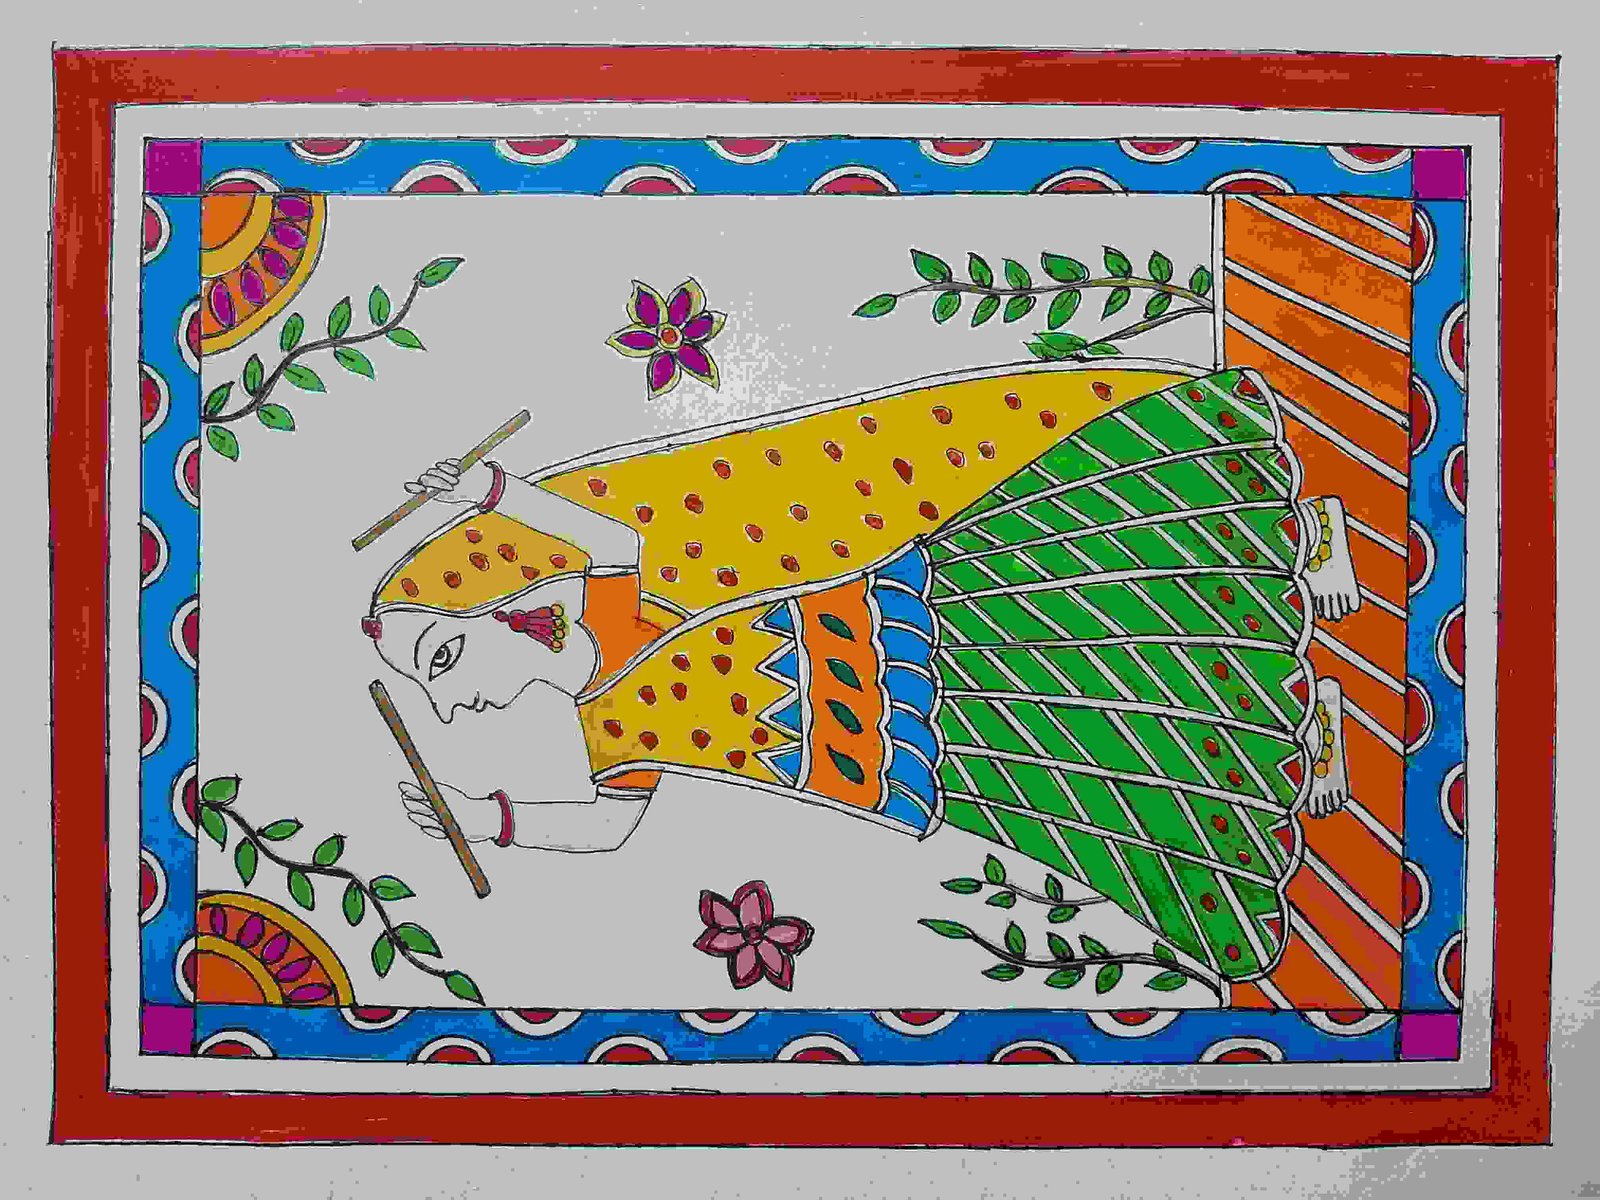 Madhubani Art Paper A3